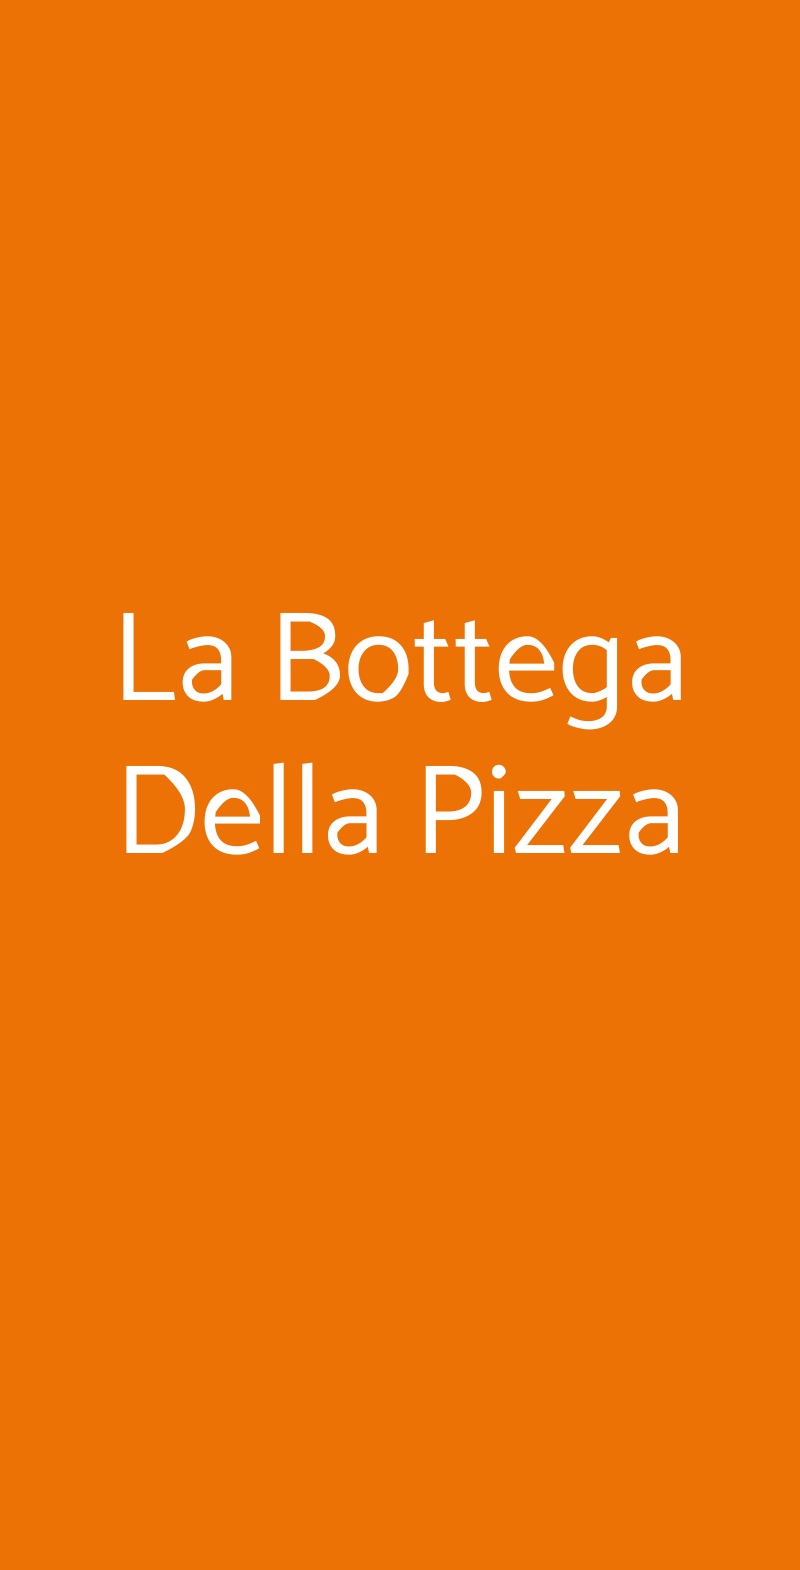 La Bottega Della Pizza Torino menù 1 pagina